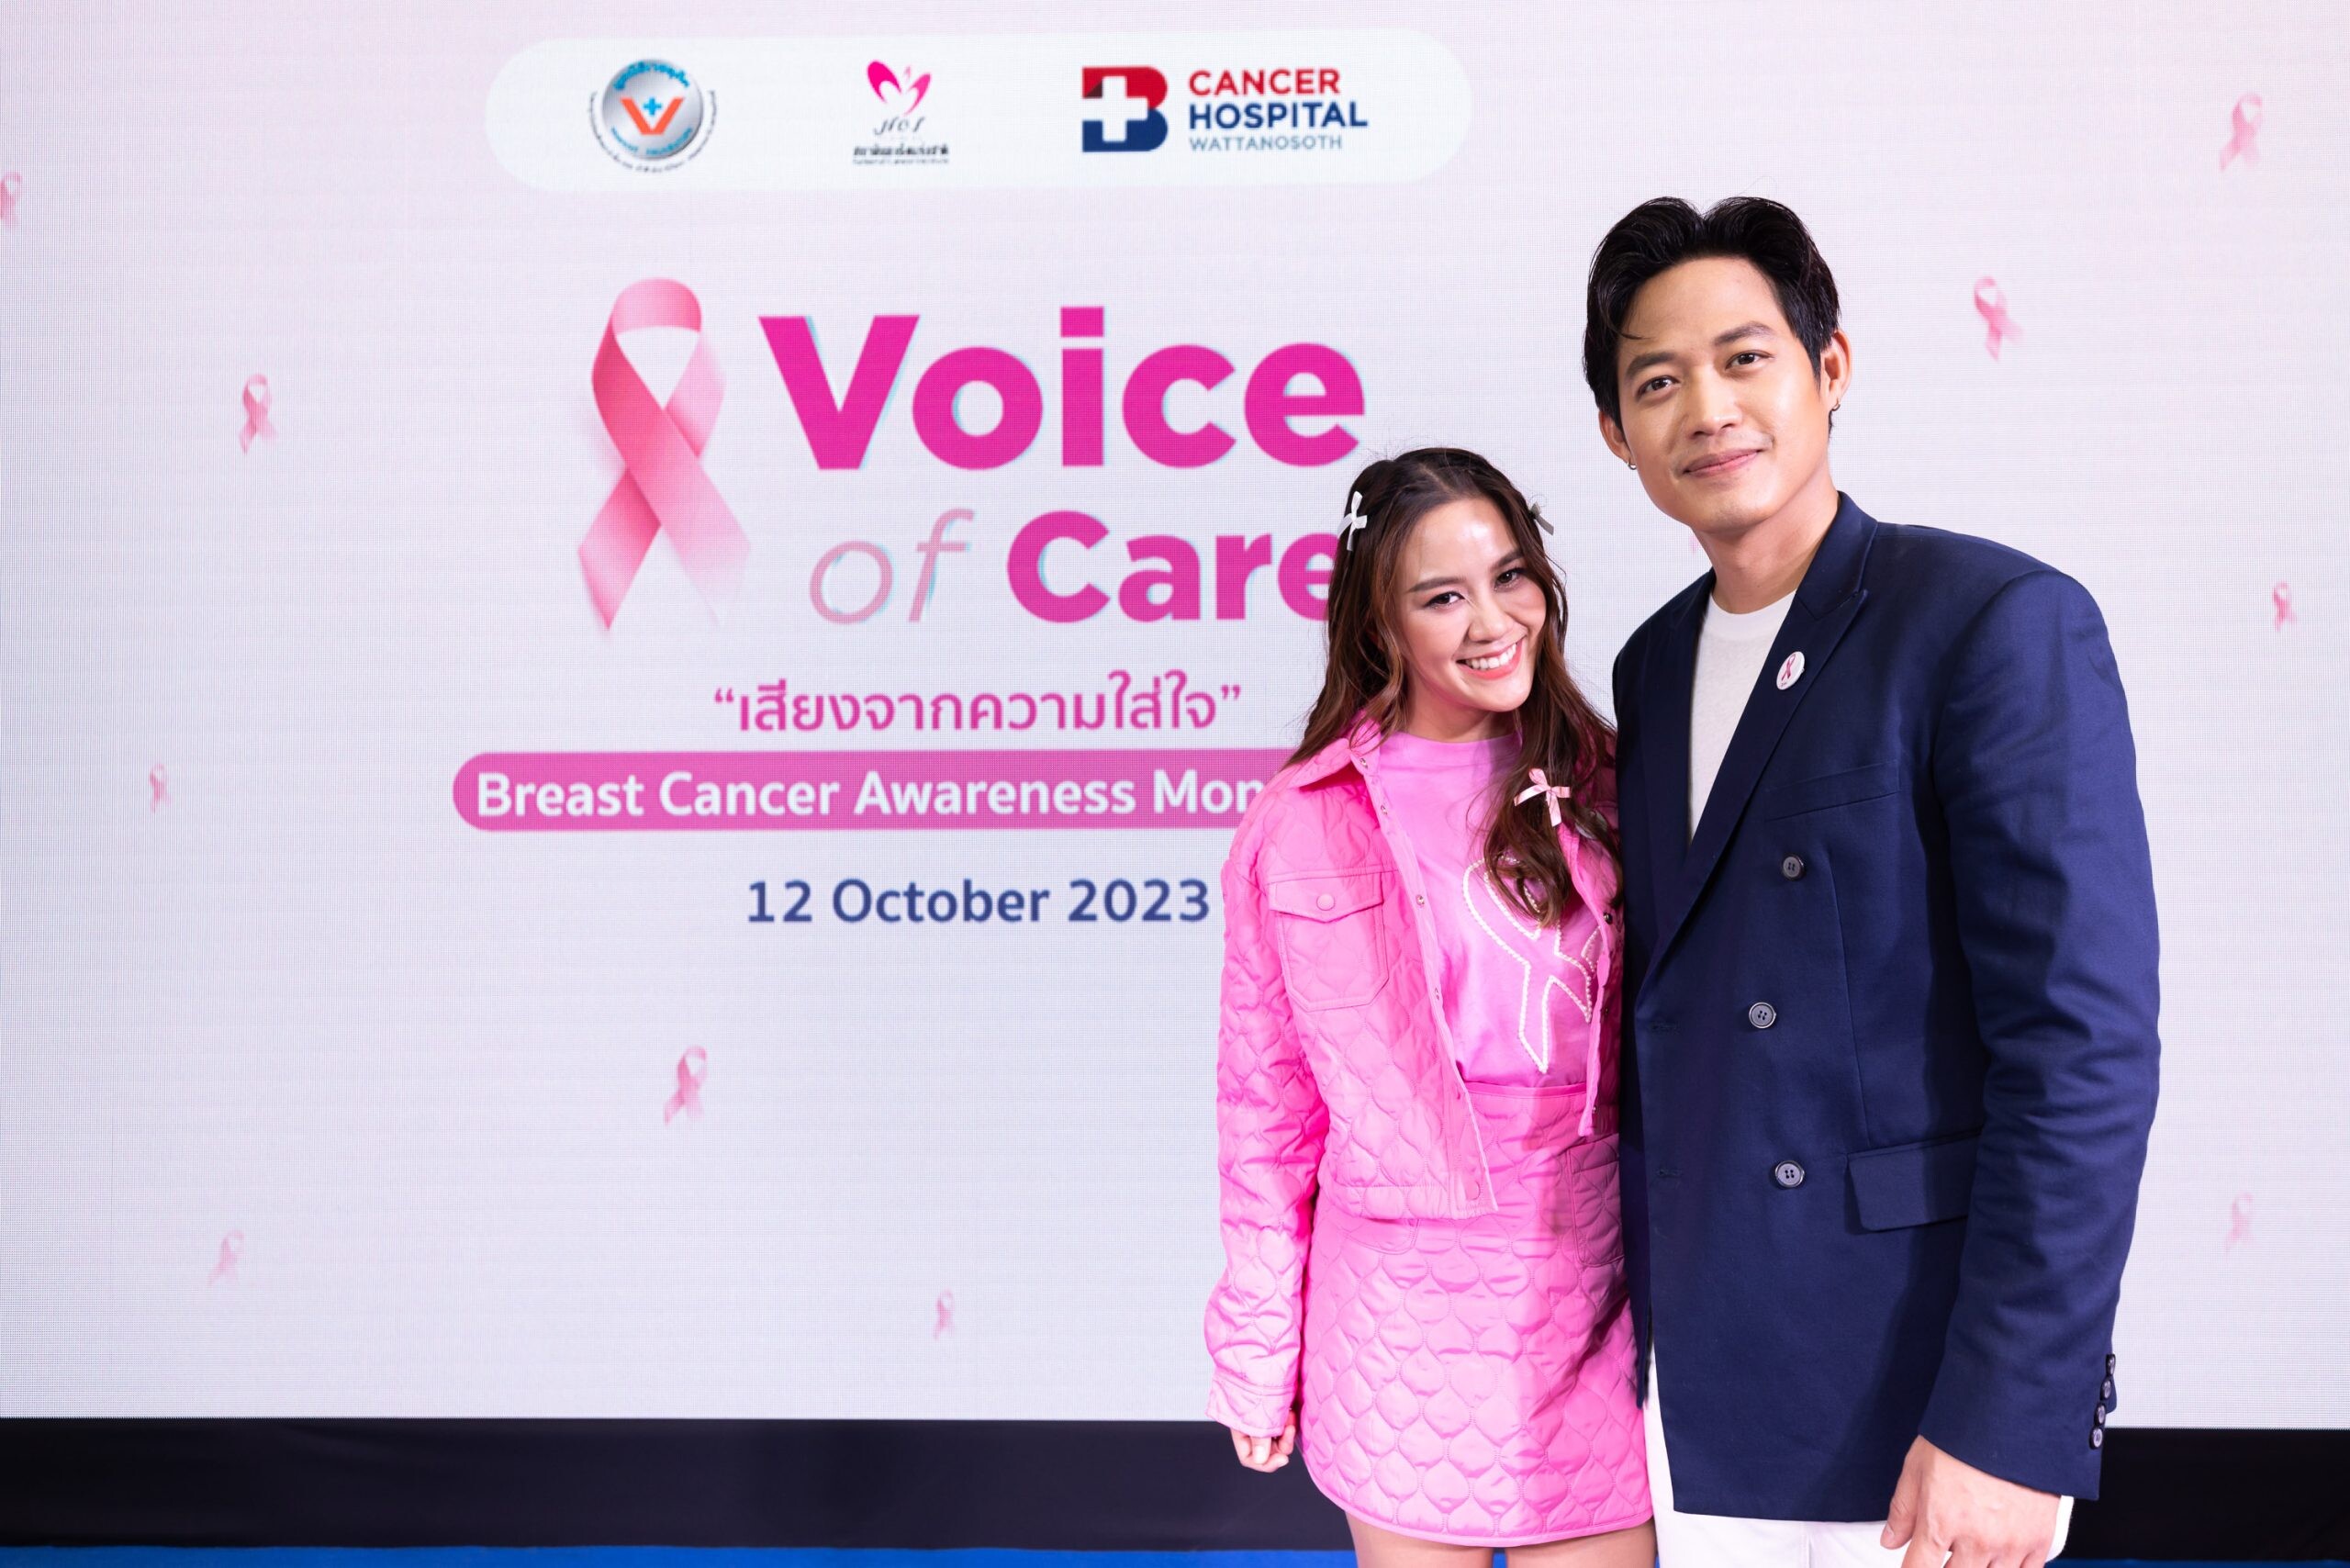 รพ.มะเร็งกรุงเทพ วัฒโนสถ จัดงาน Voice of Care "เสียงจากความใส่ใจ" Breast Cancer Awareness Month 2023 เชิญชวนคนไทยตรวจมะเร็งเต้านม